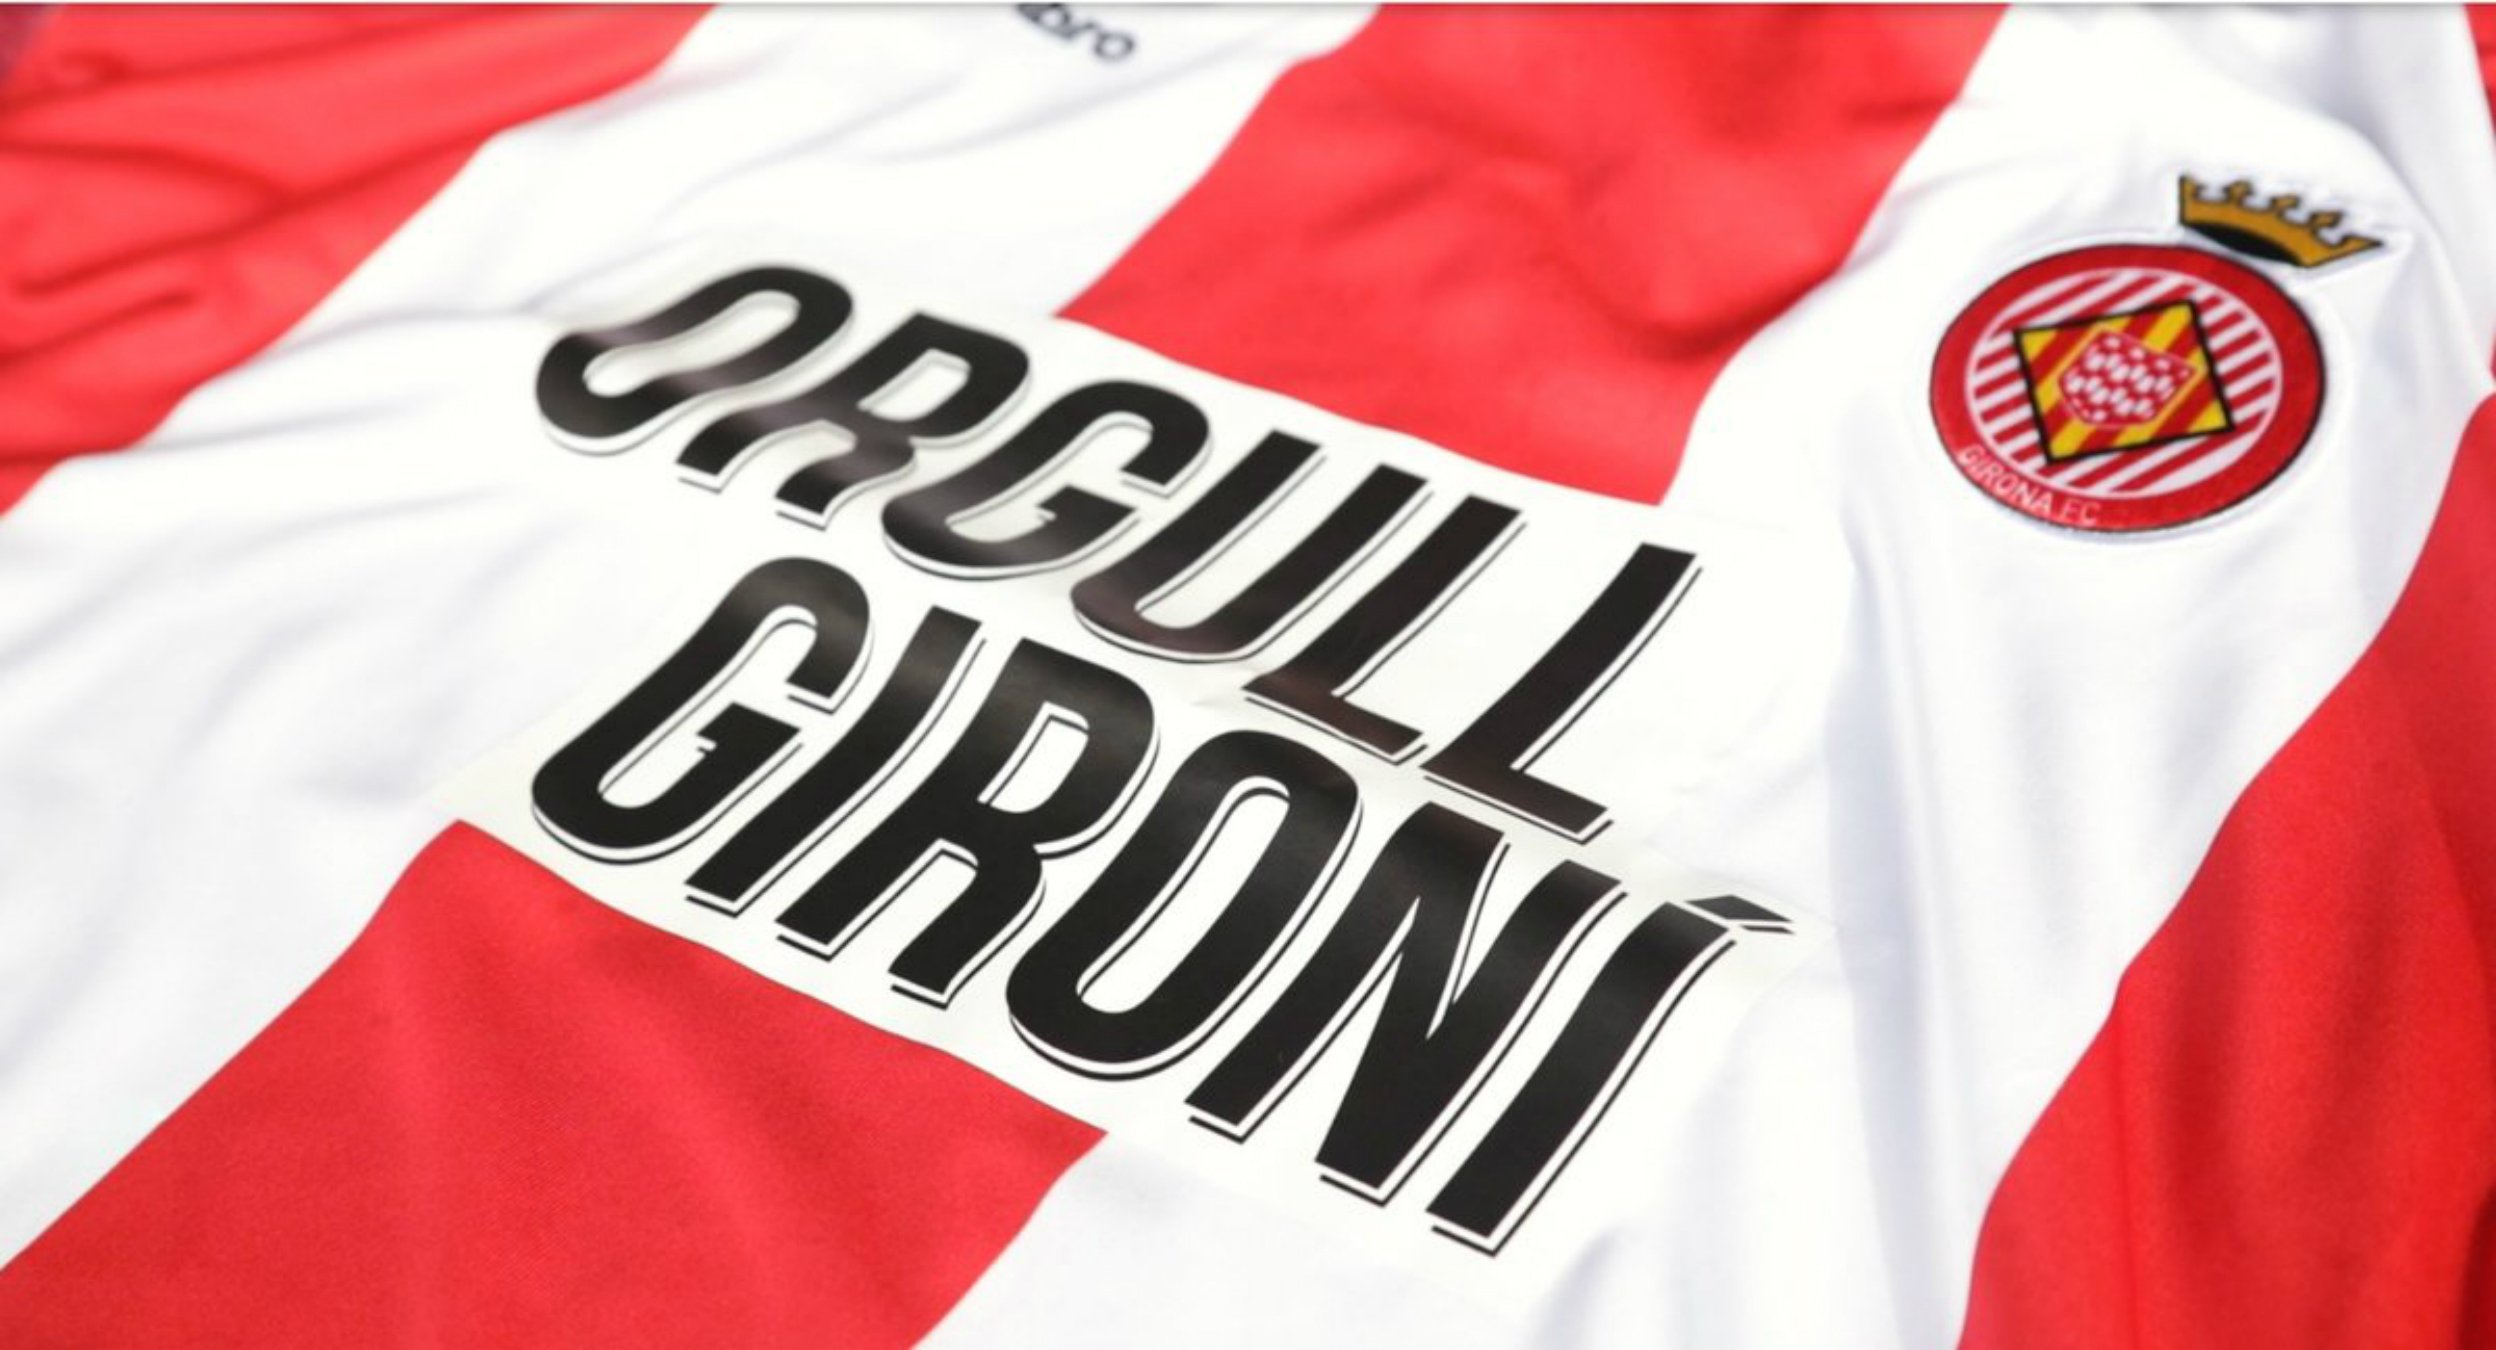 Orgull Gironí: la nueva 'publicidad' de la camiseta del Girona